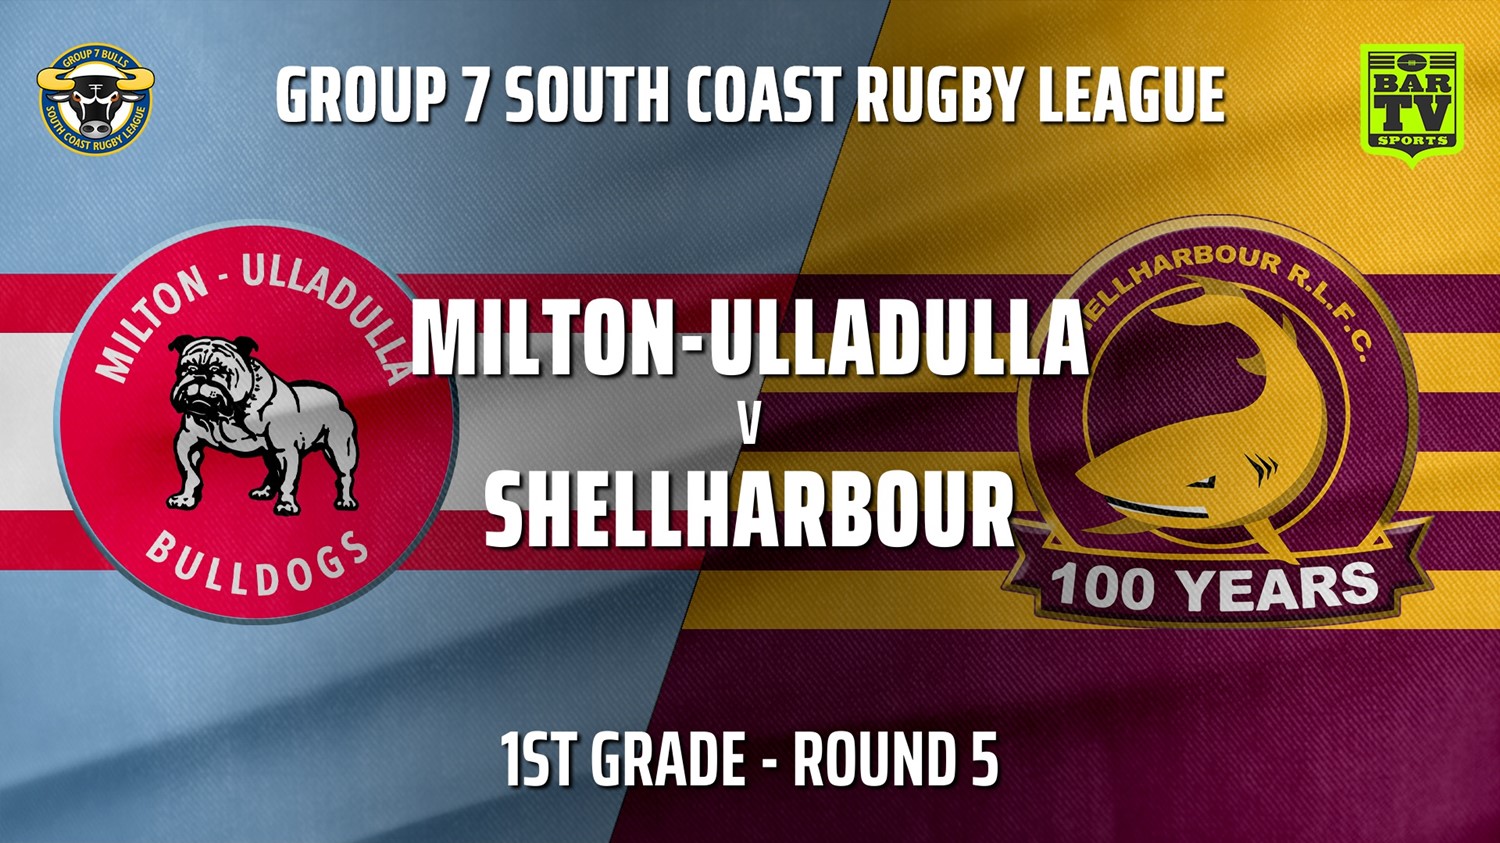 210516-Group 7 RL Round 5 - 1st Grade - Milton-Ulladulla Bulldogs v Shellharbour Sharks Slate Image